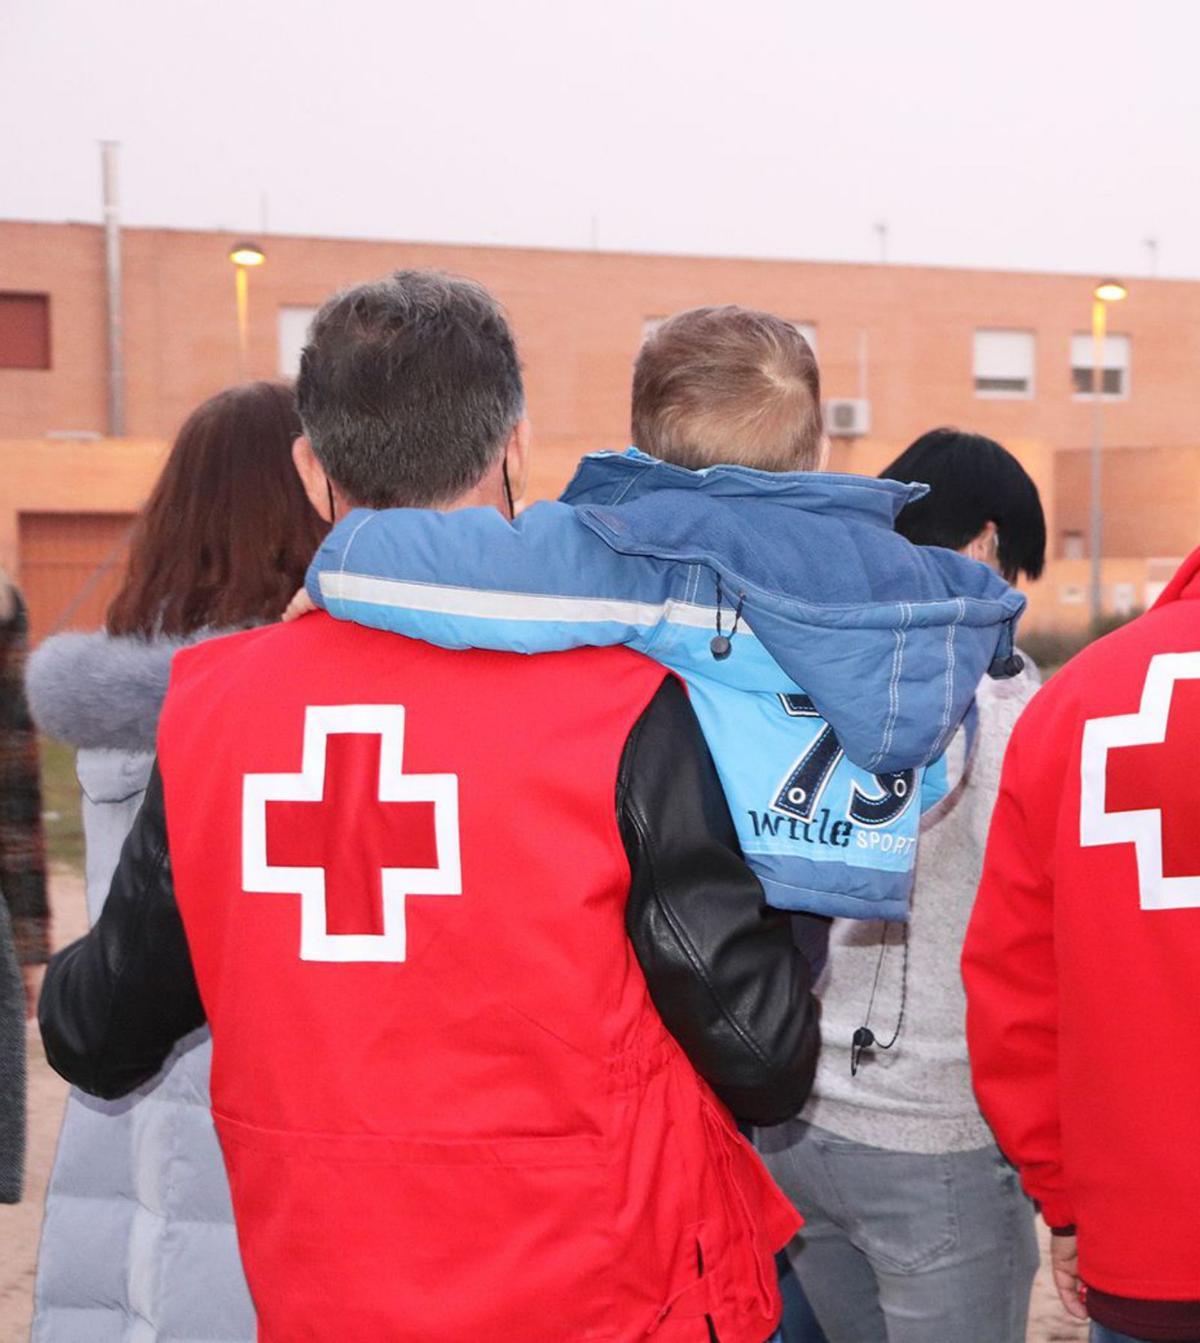 Voluntarios de Cruz Roja en una intervención con refugiados. | Cedida